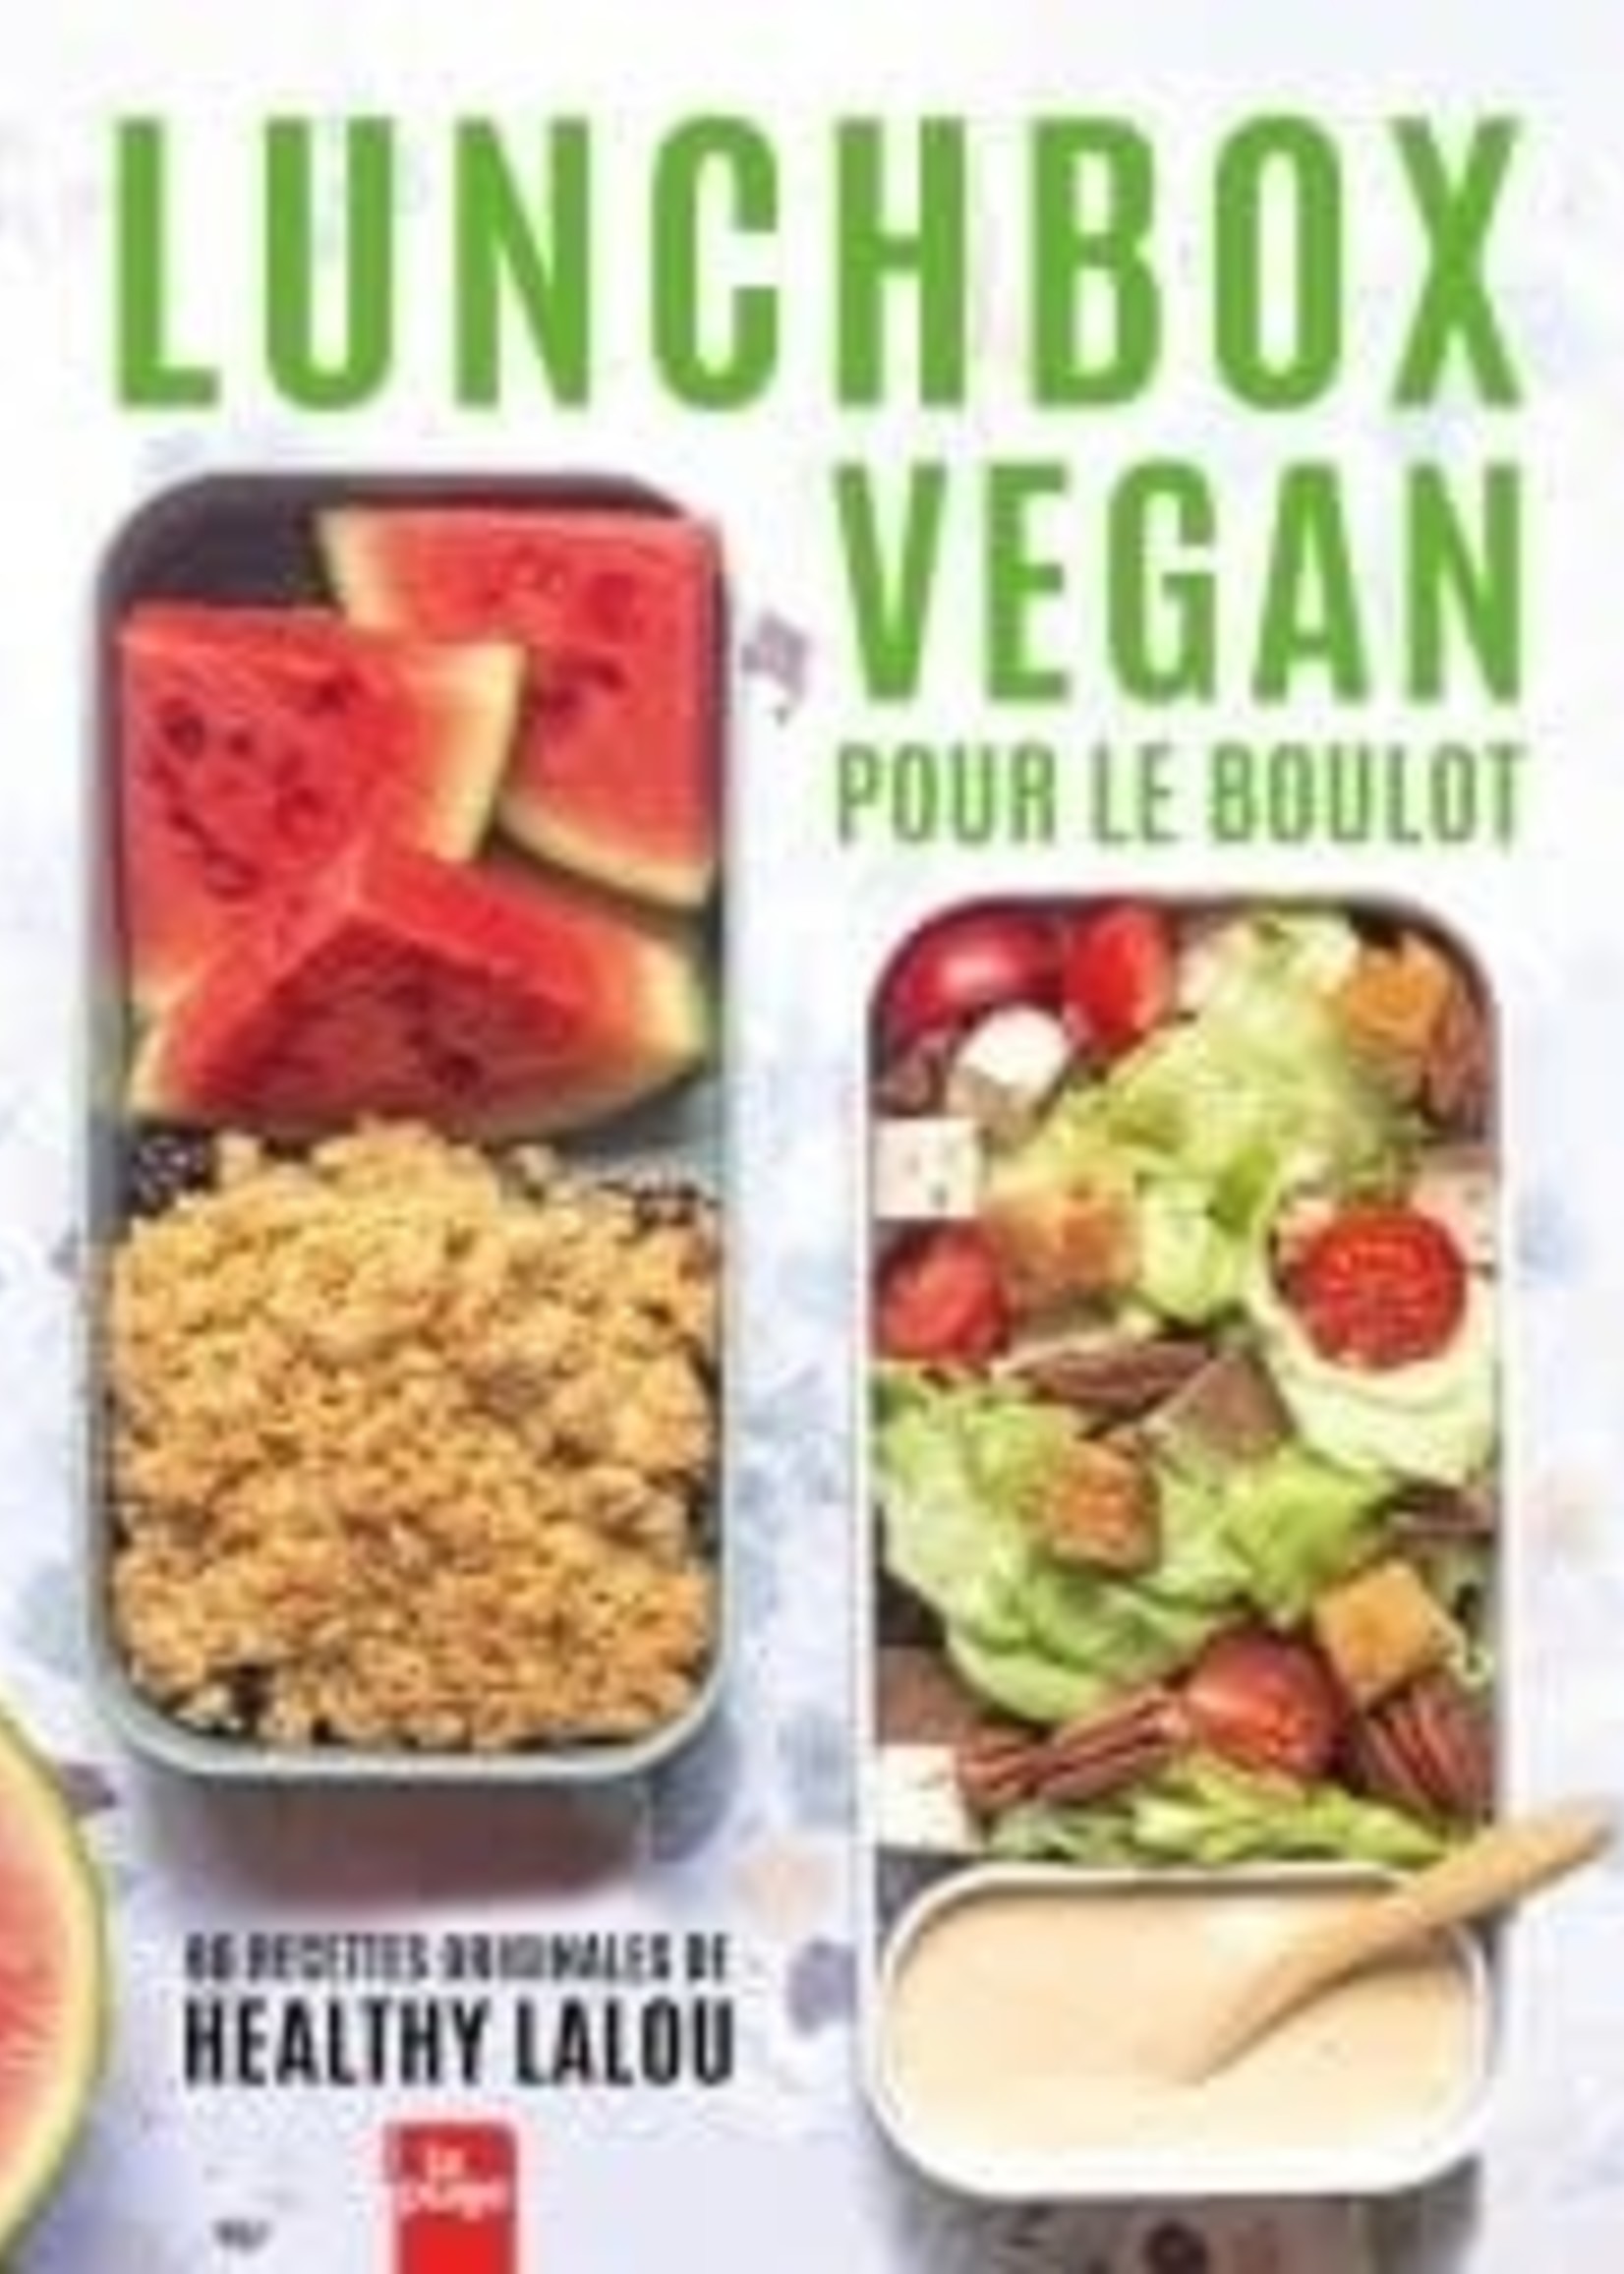 La Plage Lunchbox vegan pour le boulot - Healthy Lalou